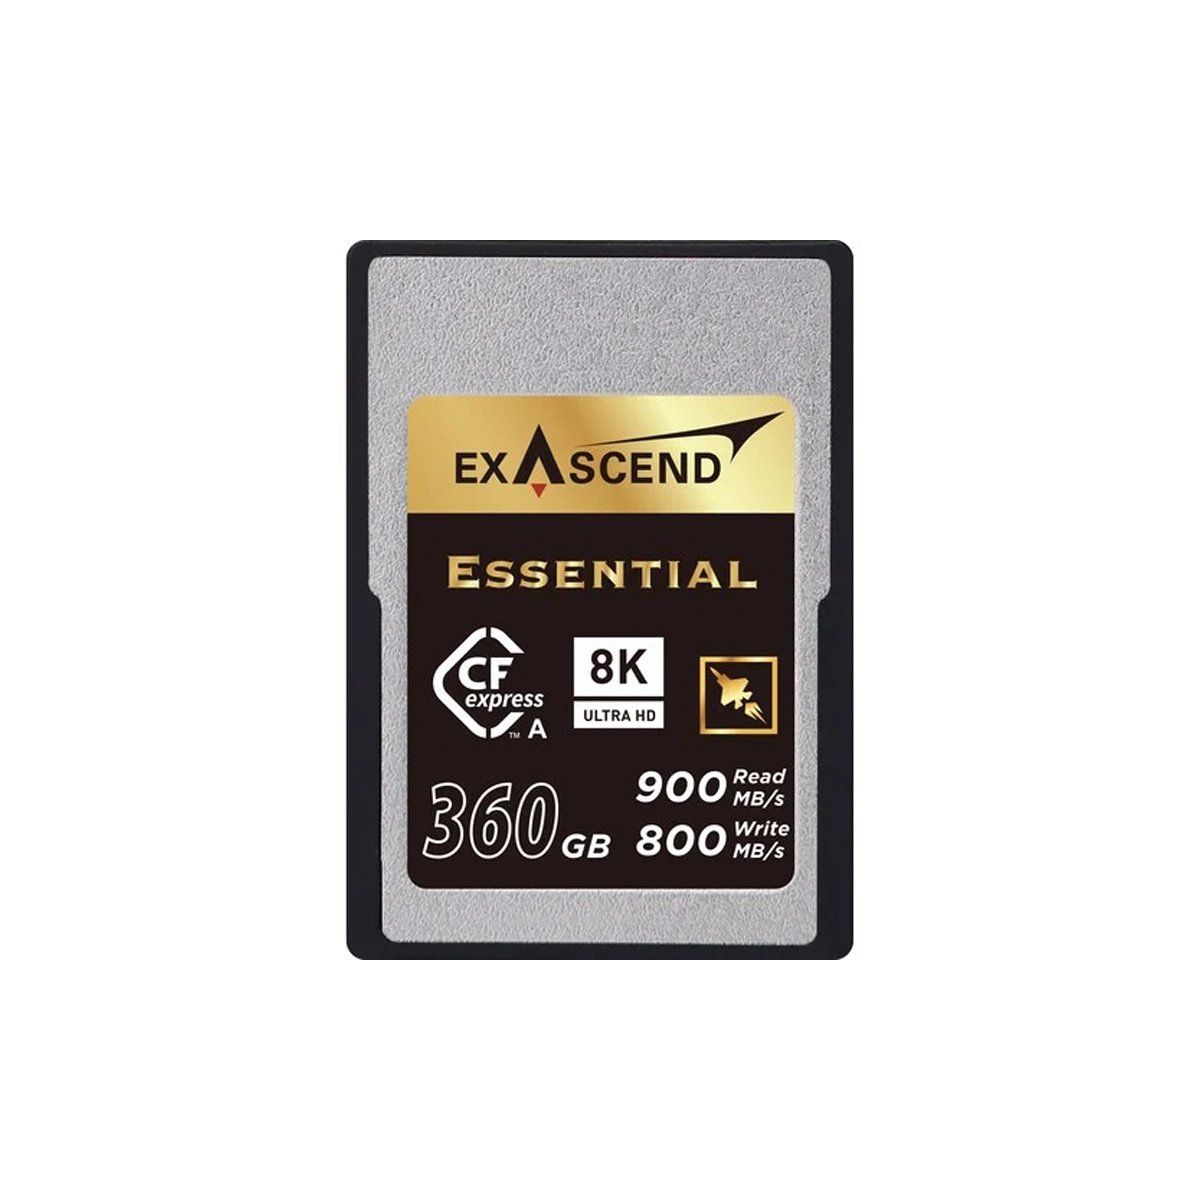  Thẻ nhớ CF Express (Type A) - Essential - 360GB 800MB/s hiệu Exascend - Chính hãng 